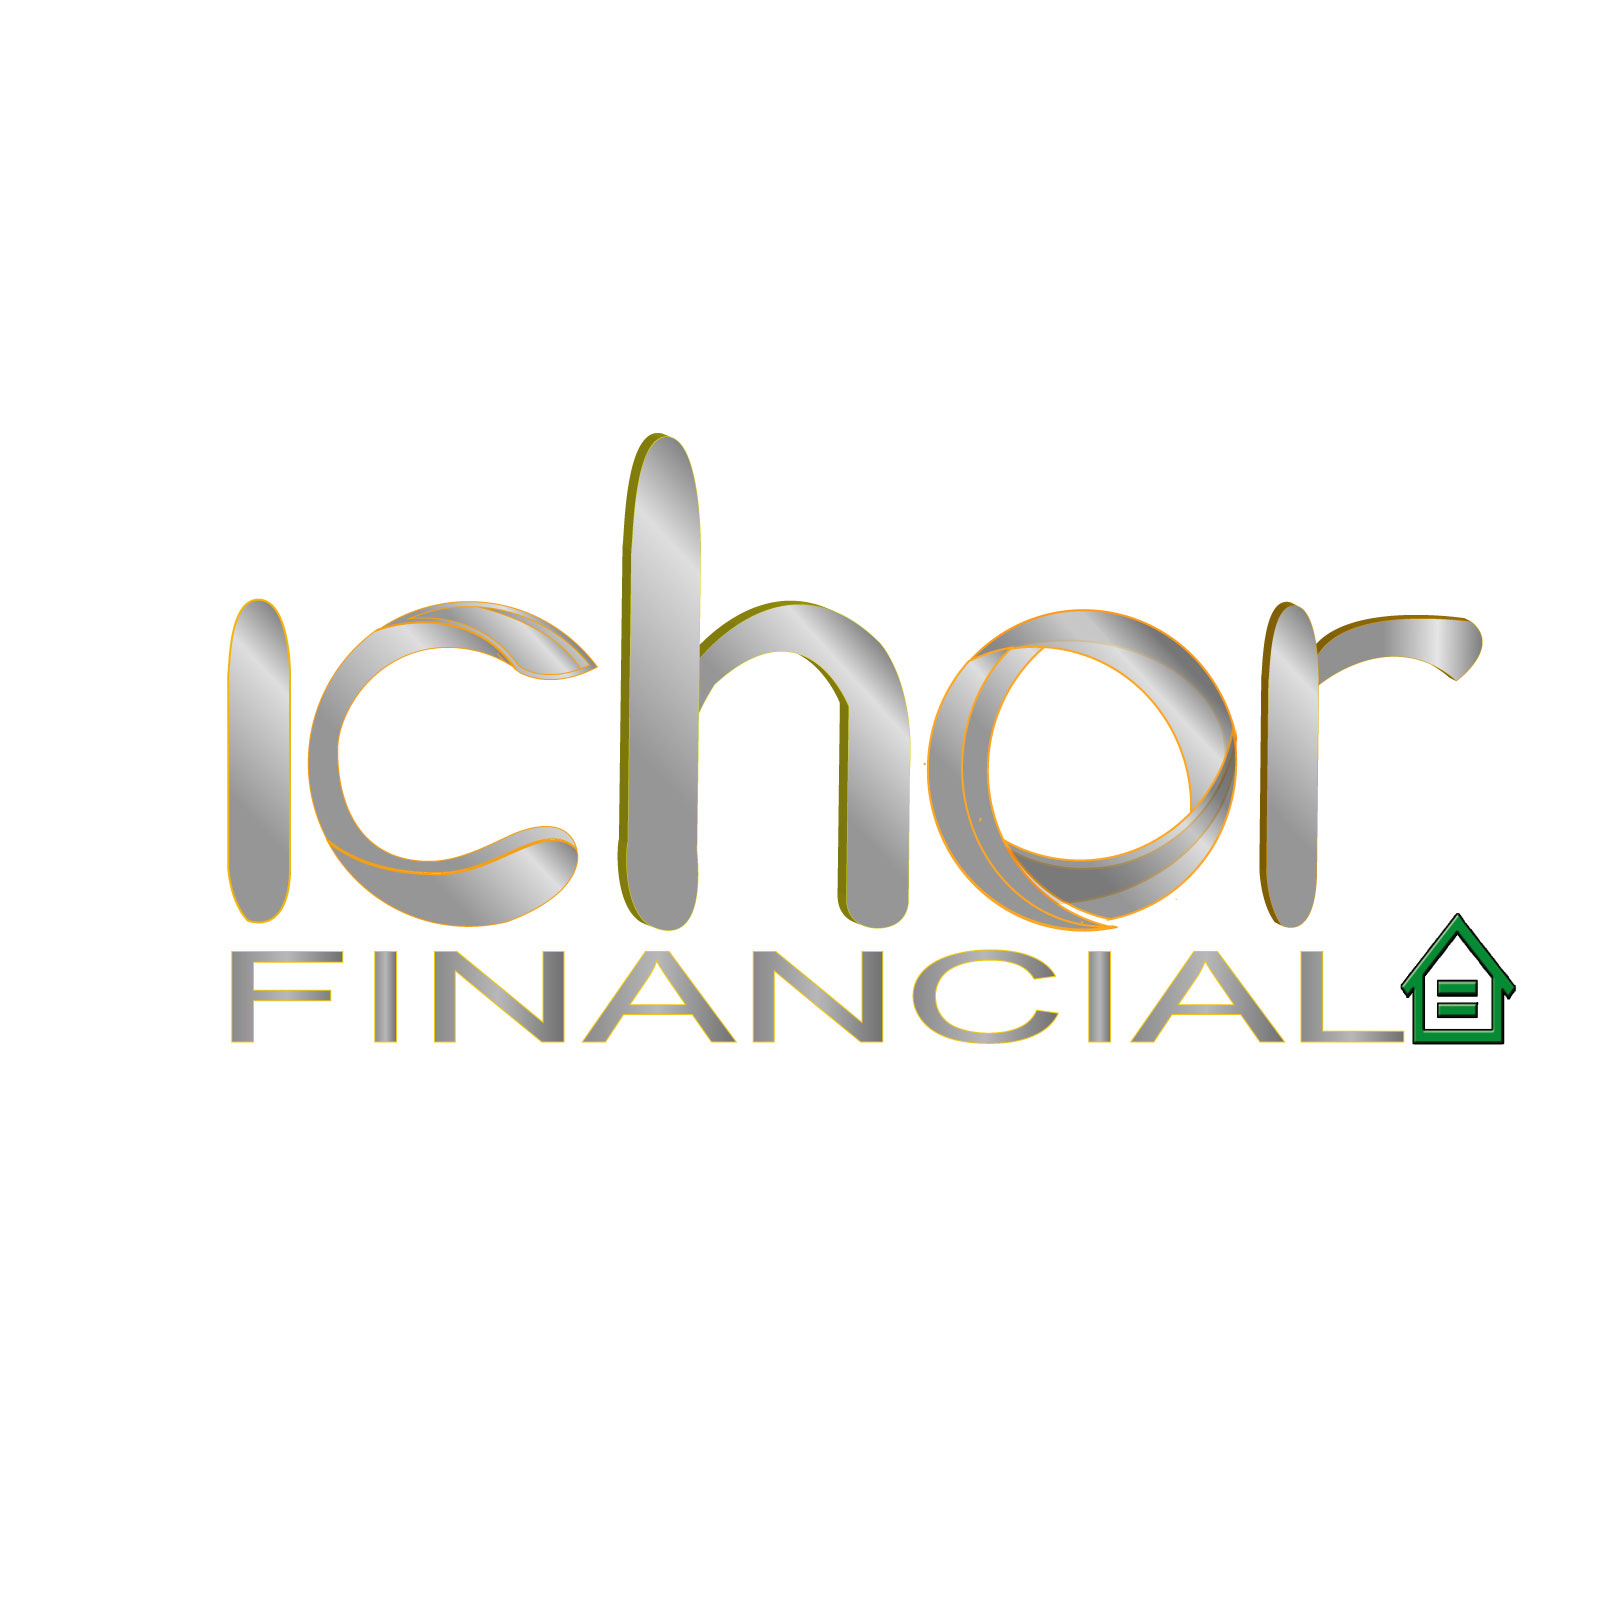 Ichor Financial